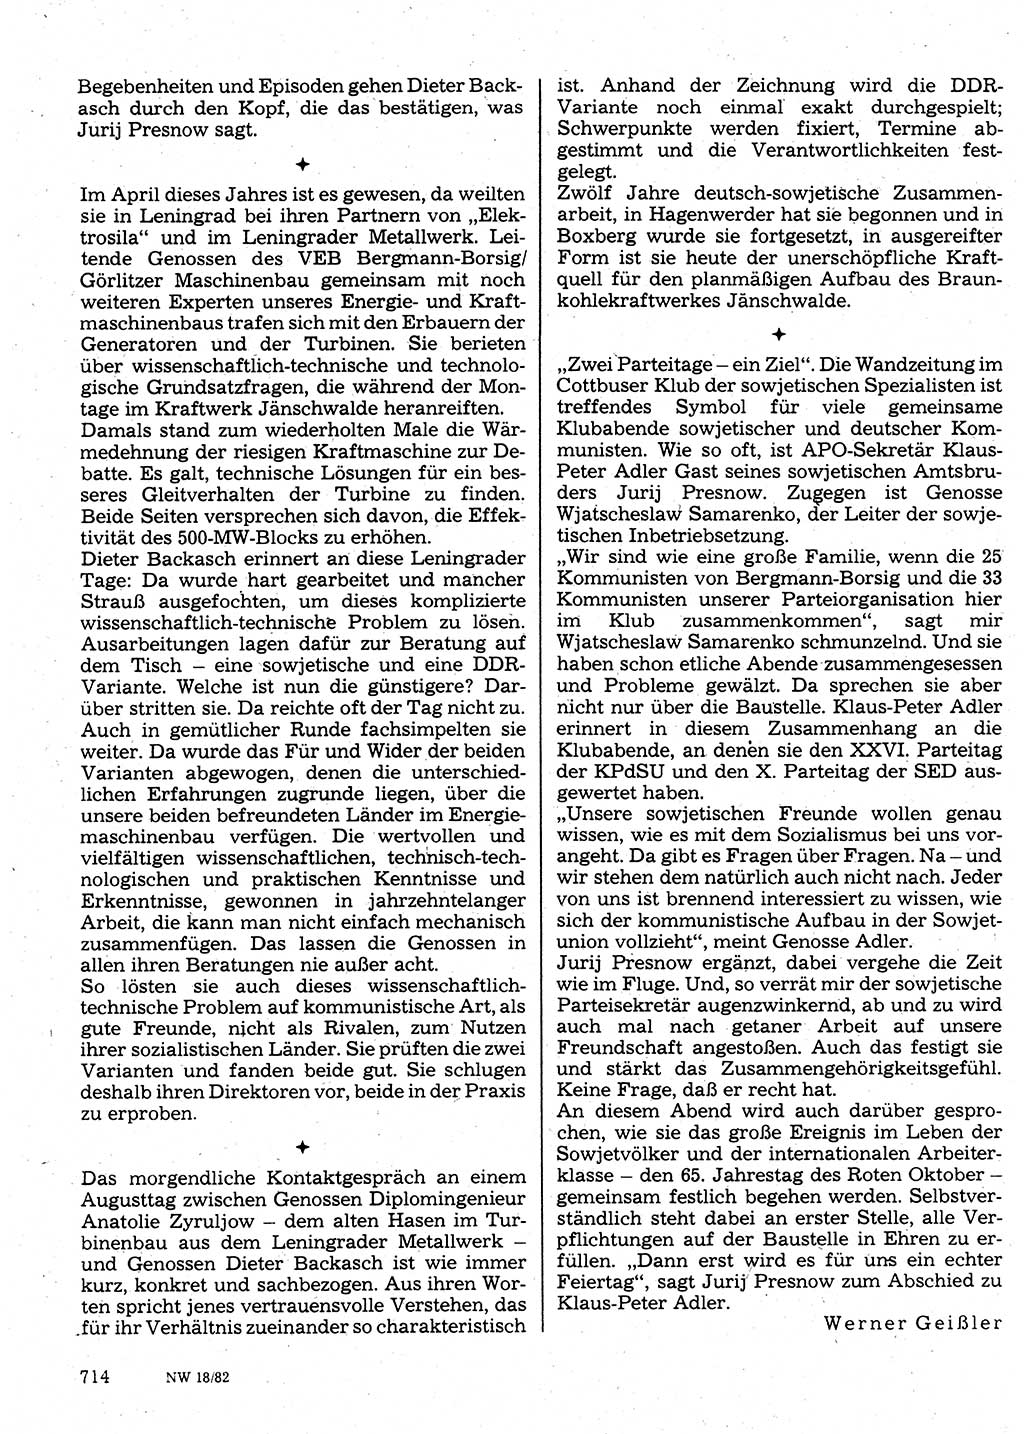 Neuer Weg (NW), Organ des Zentralkomitees (ZK) der SED (Sozialistische Einheitspartei Deutschlands) für Fragen des Parteilebens, 37. Jahrgang [Deutsche Demokratische Republik (DDR)] 1982, Seite 714 (NW ZK SED DDR 1982, S. 714)